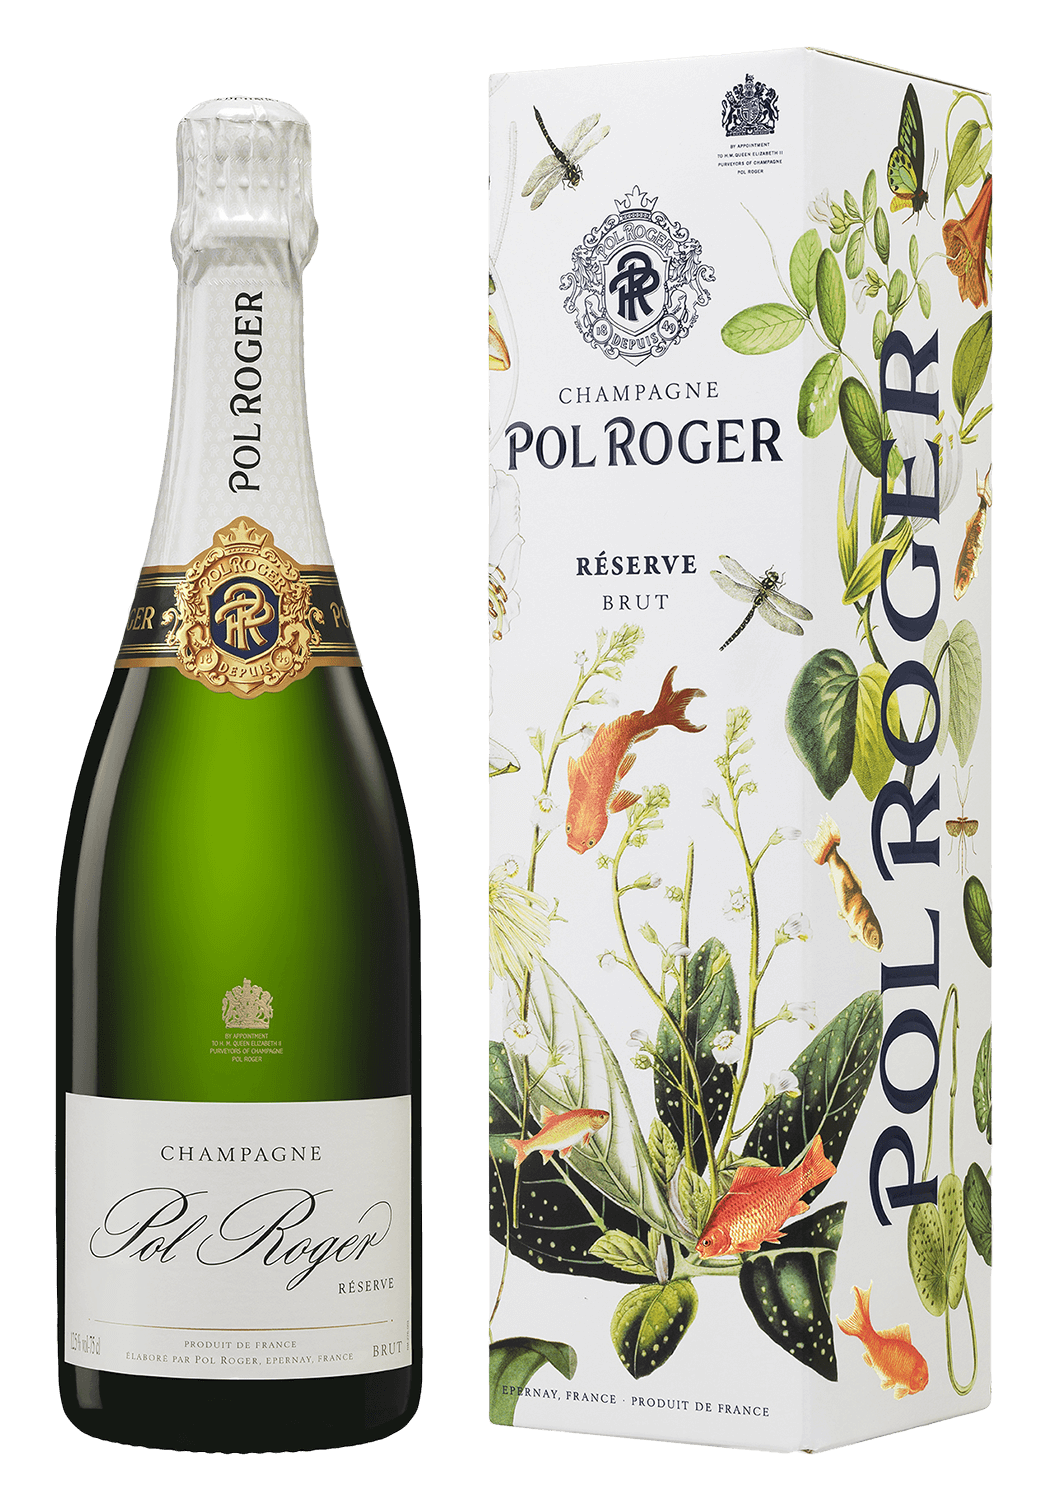 pierre de segonzac rare reserve grande champagne gift box Pol Roger Reserve Champagne AOC (gift box)